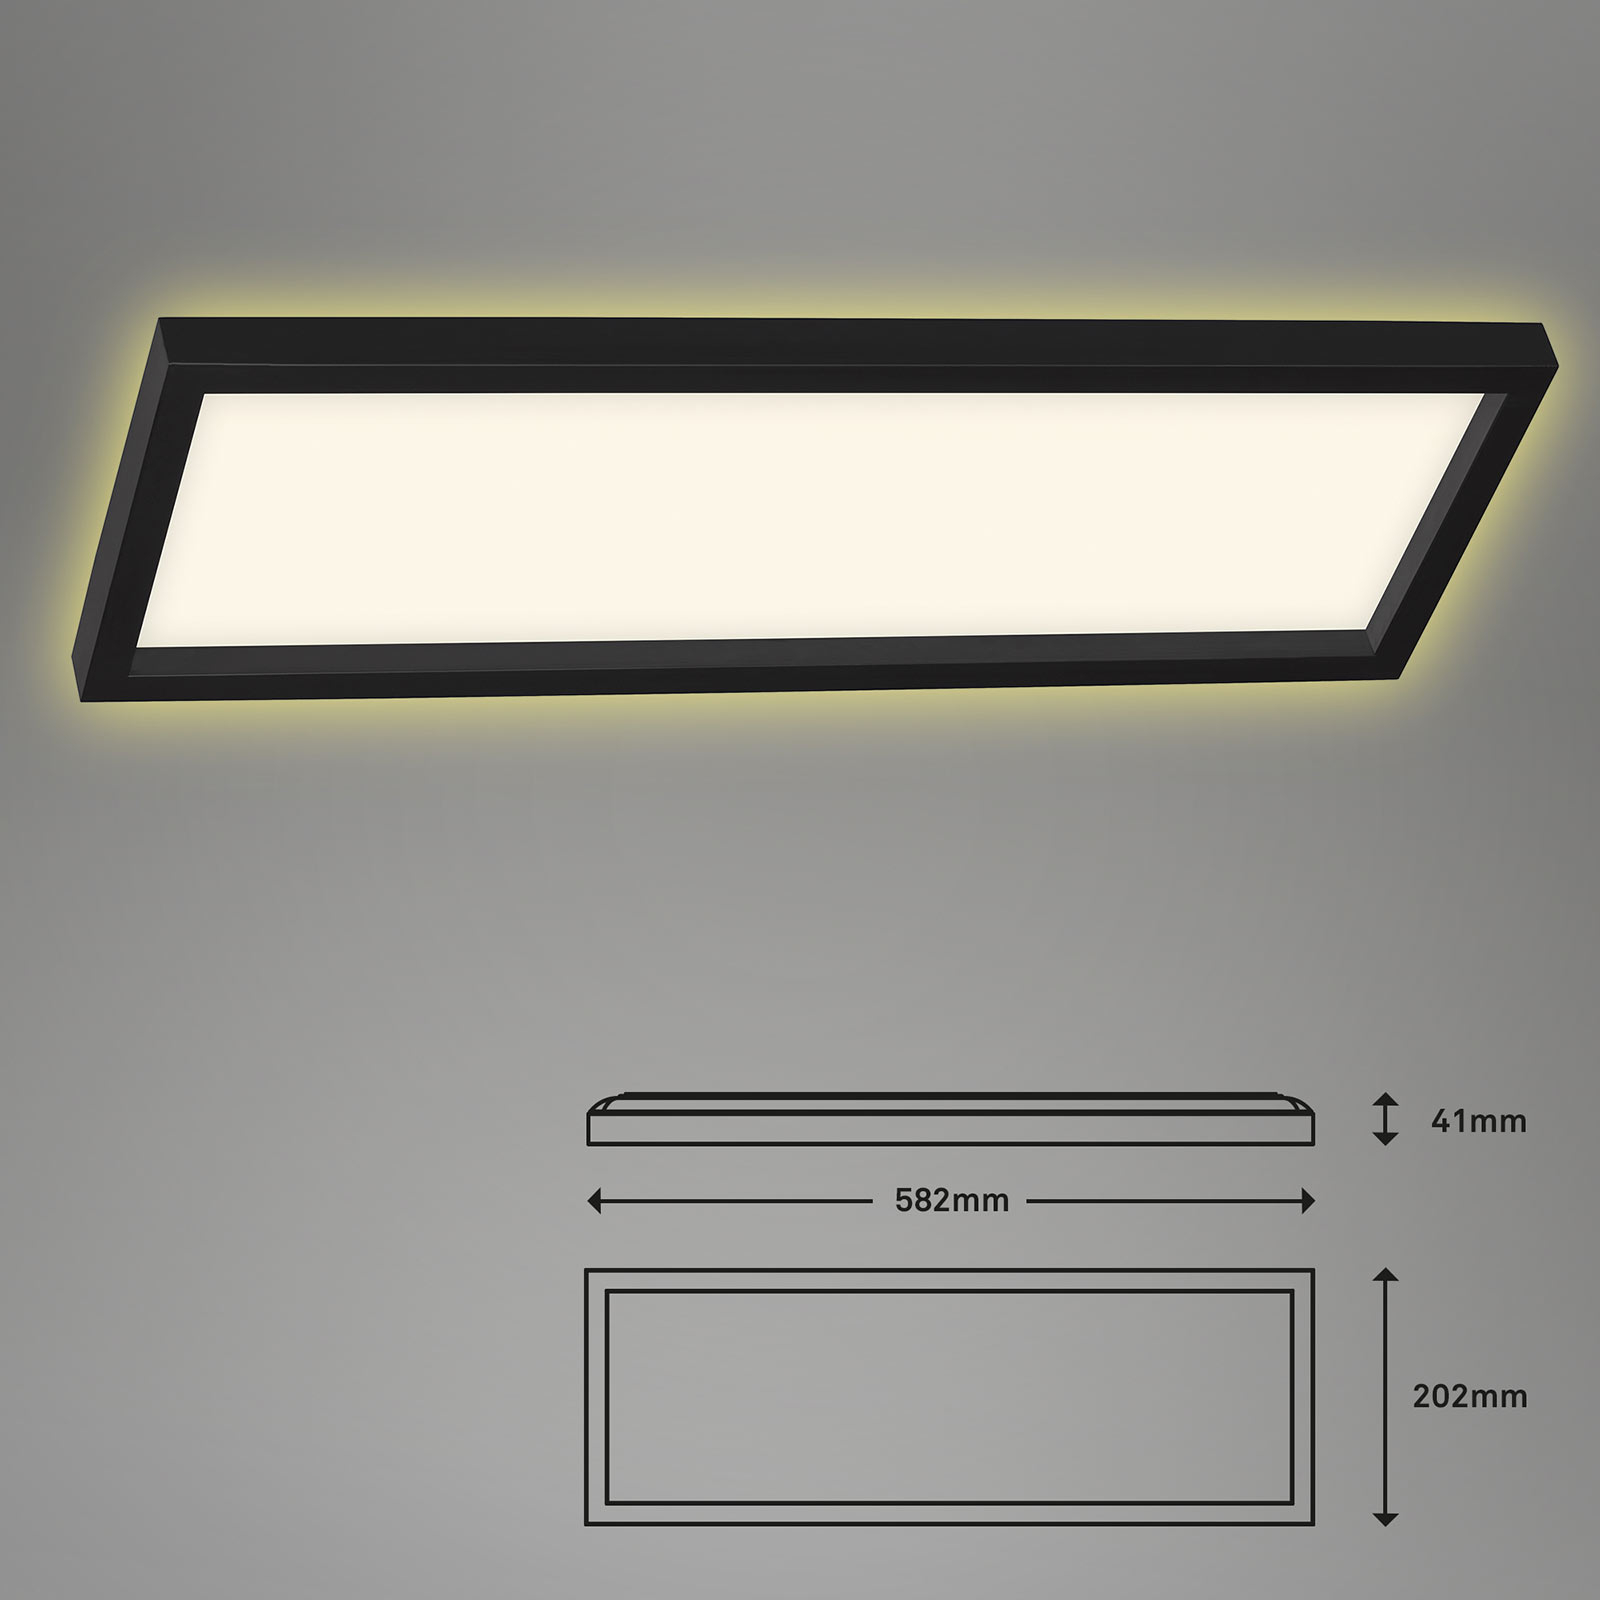 LED lubinis šviestuvas 7365, 58 x 20 cm, juodas